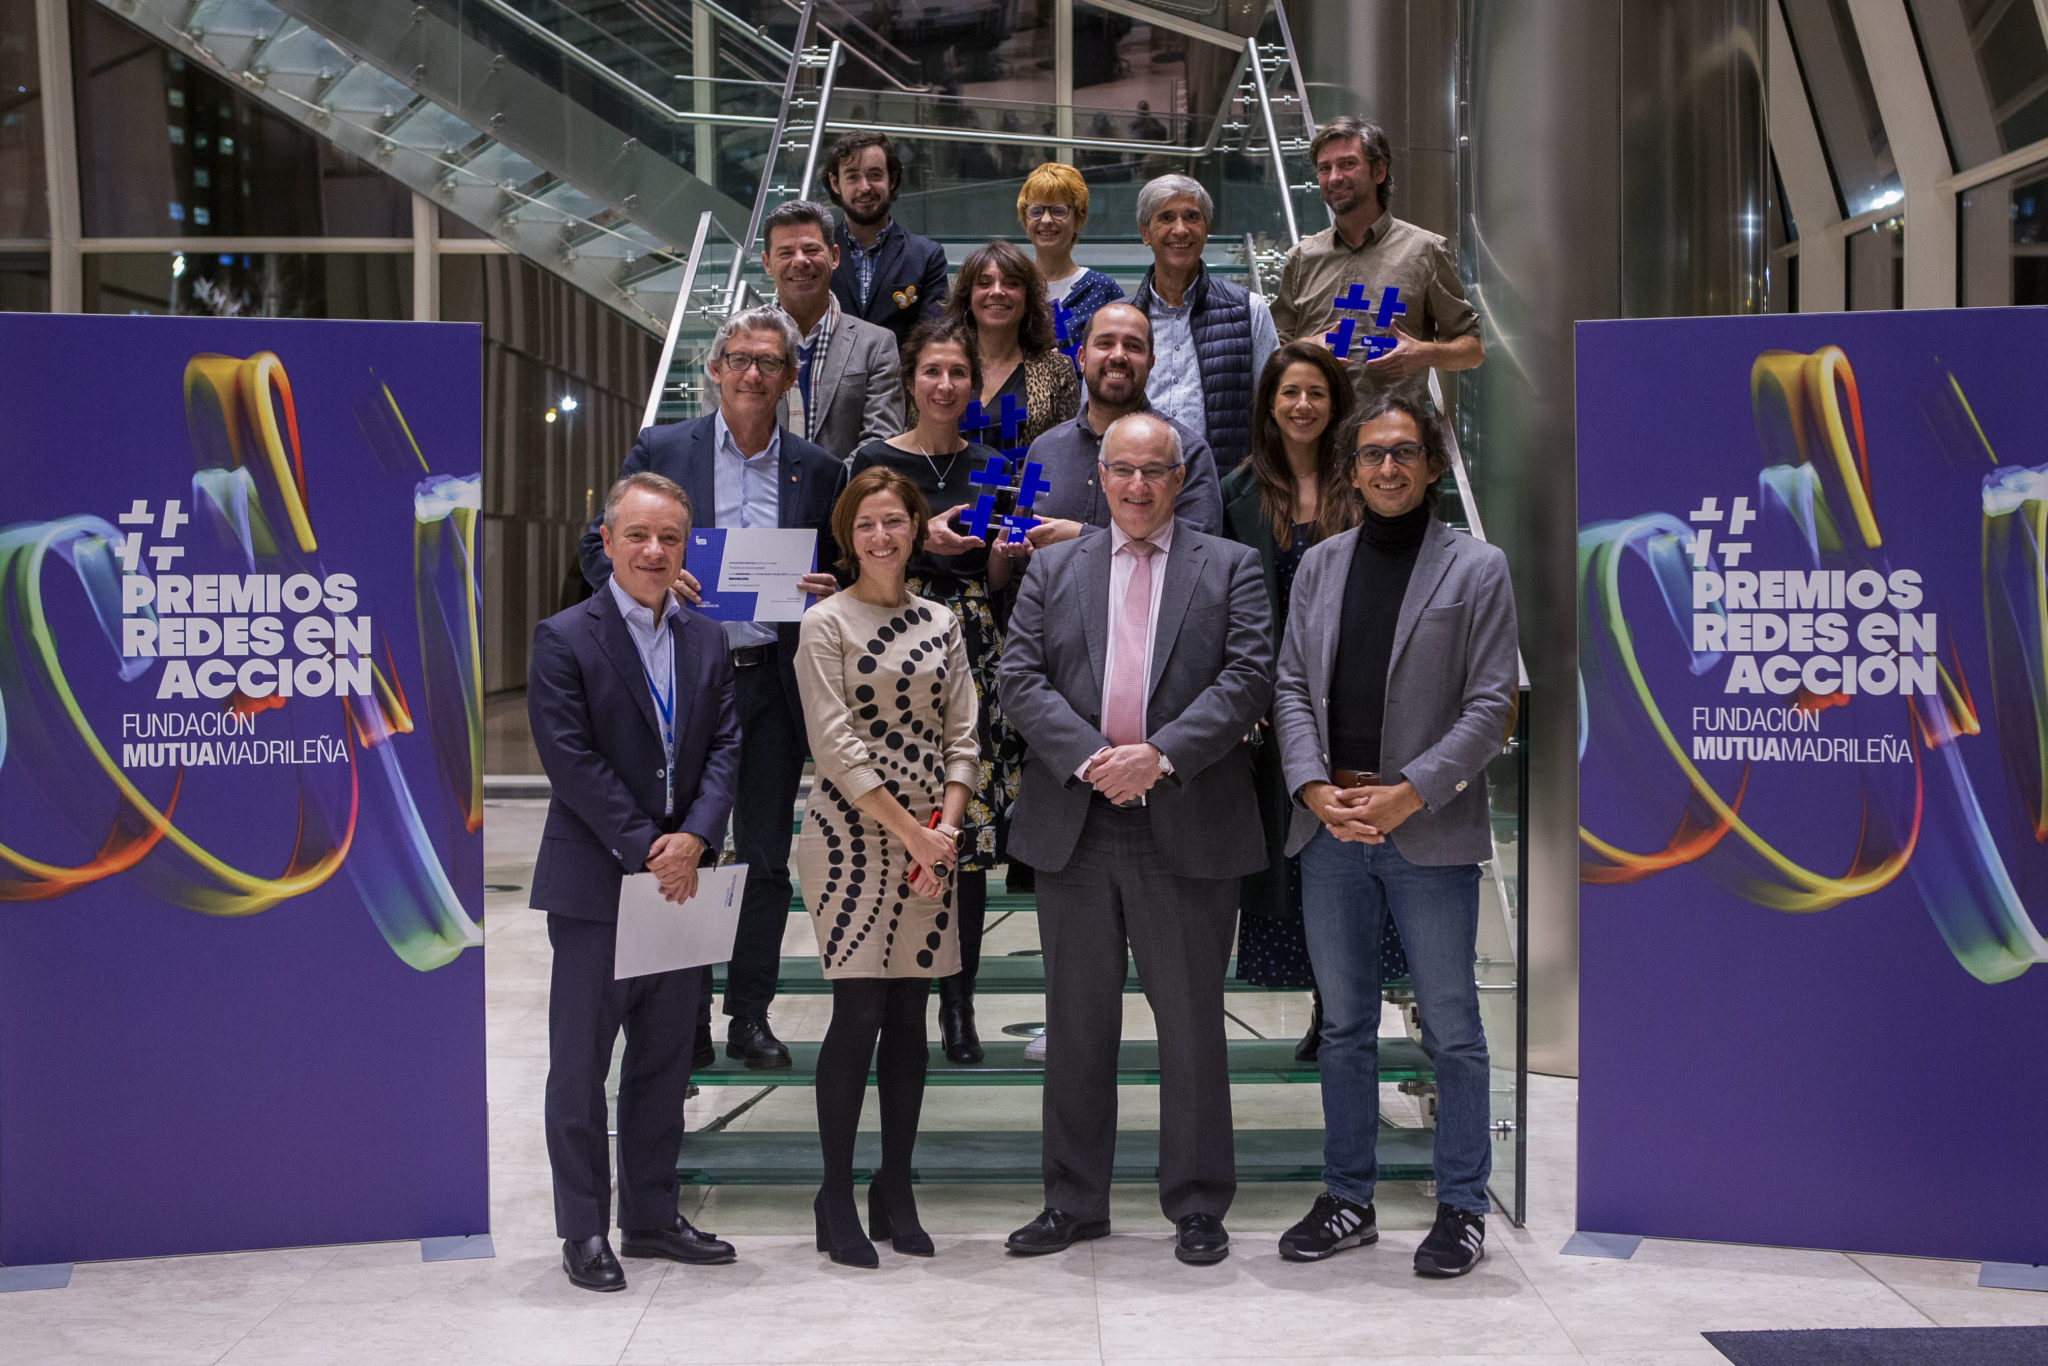 La Fundación Mutua Madrileña ha celebrado su primera edicion de los Premios Redes